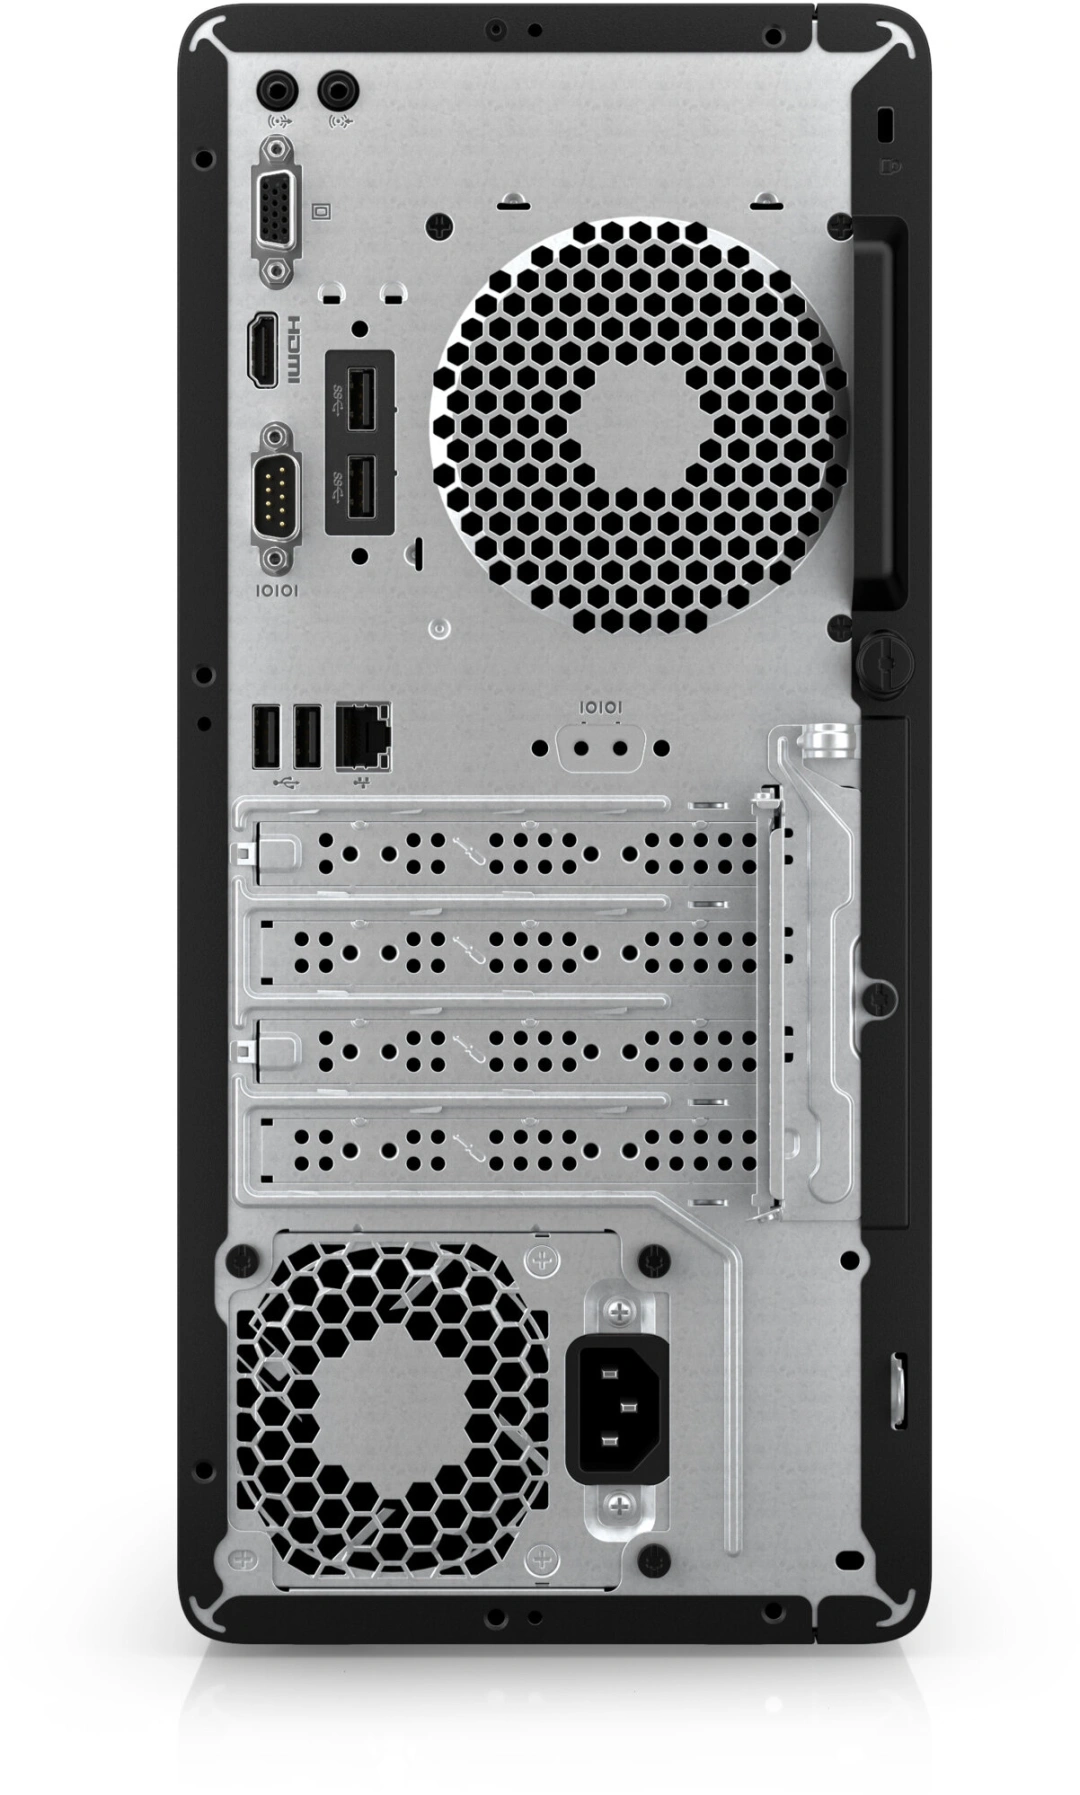 HP Pro Tower 290 G9, černá